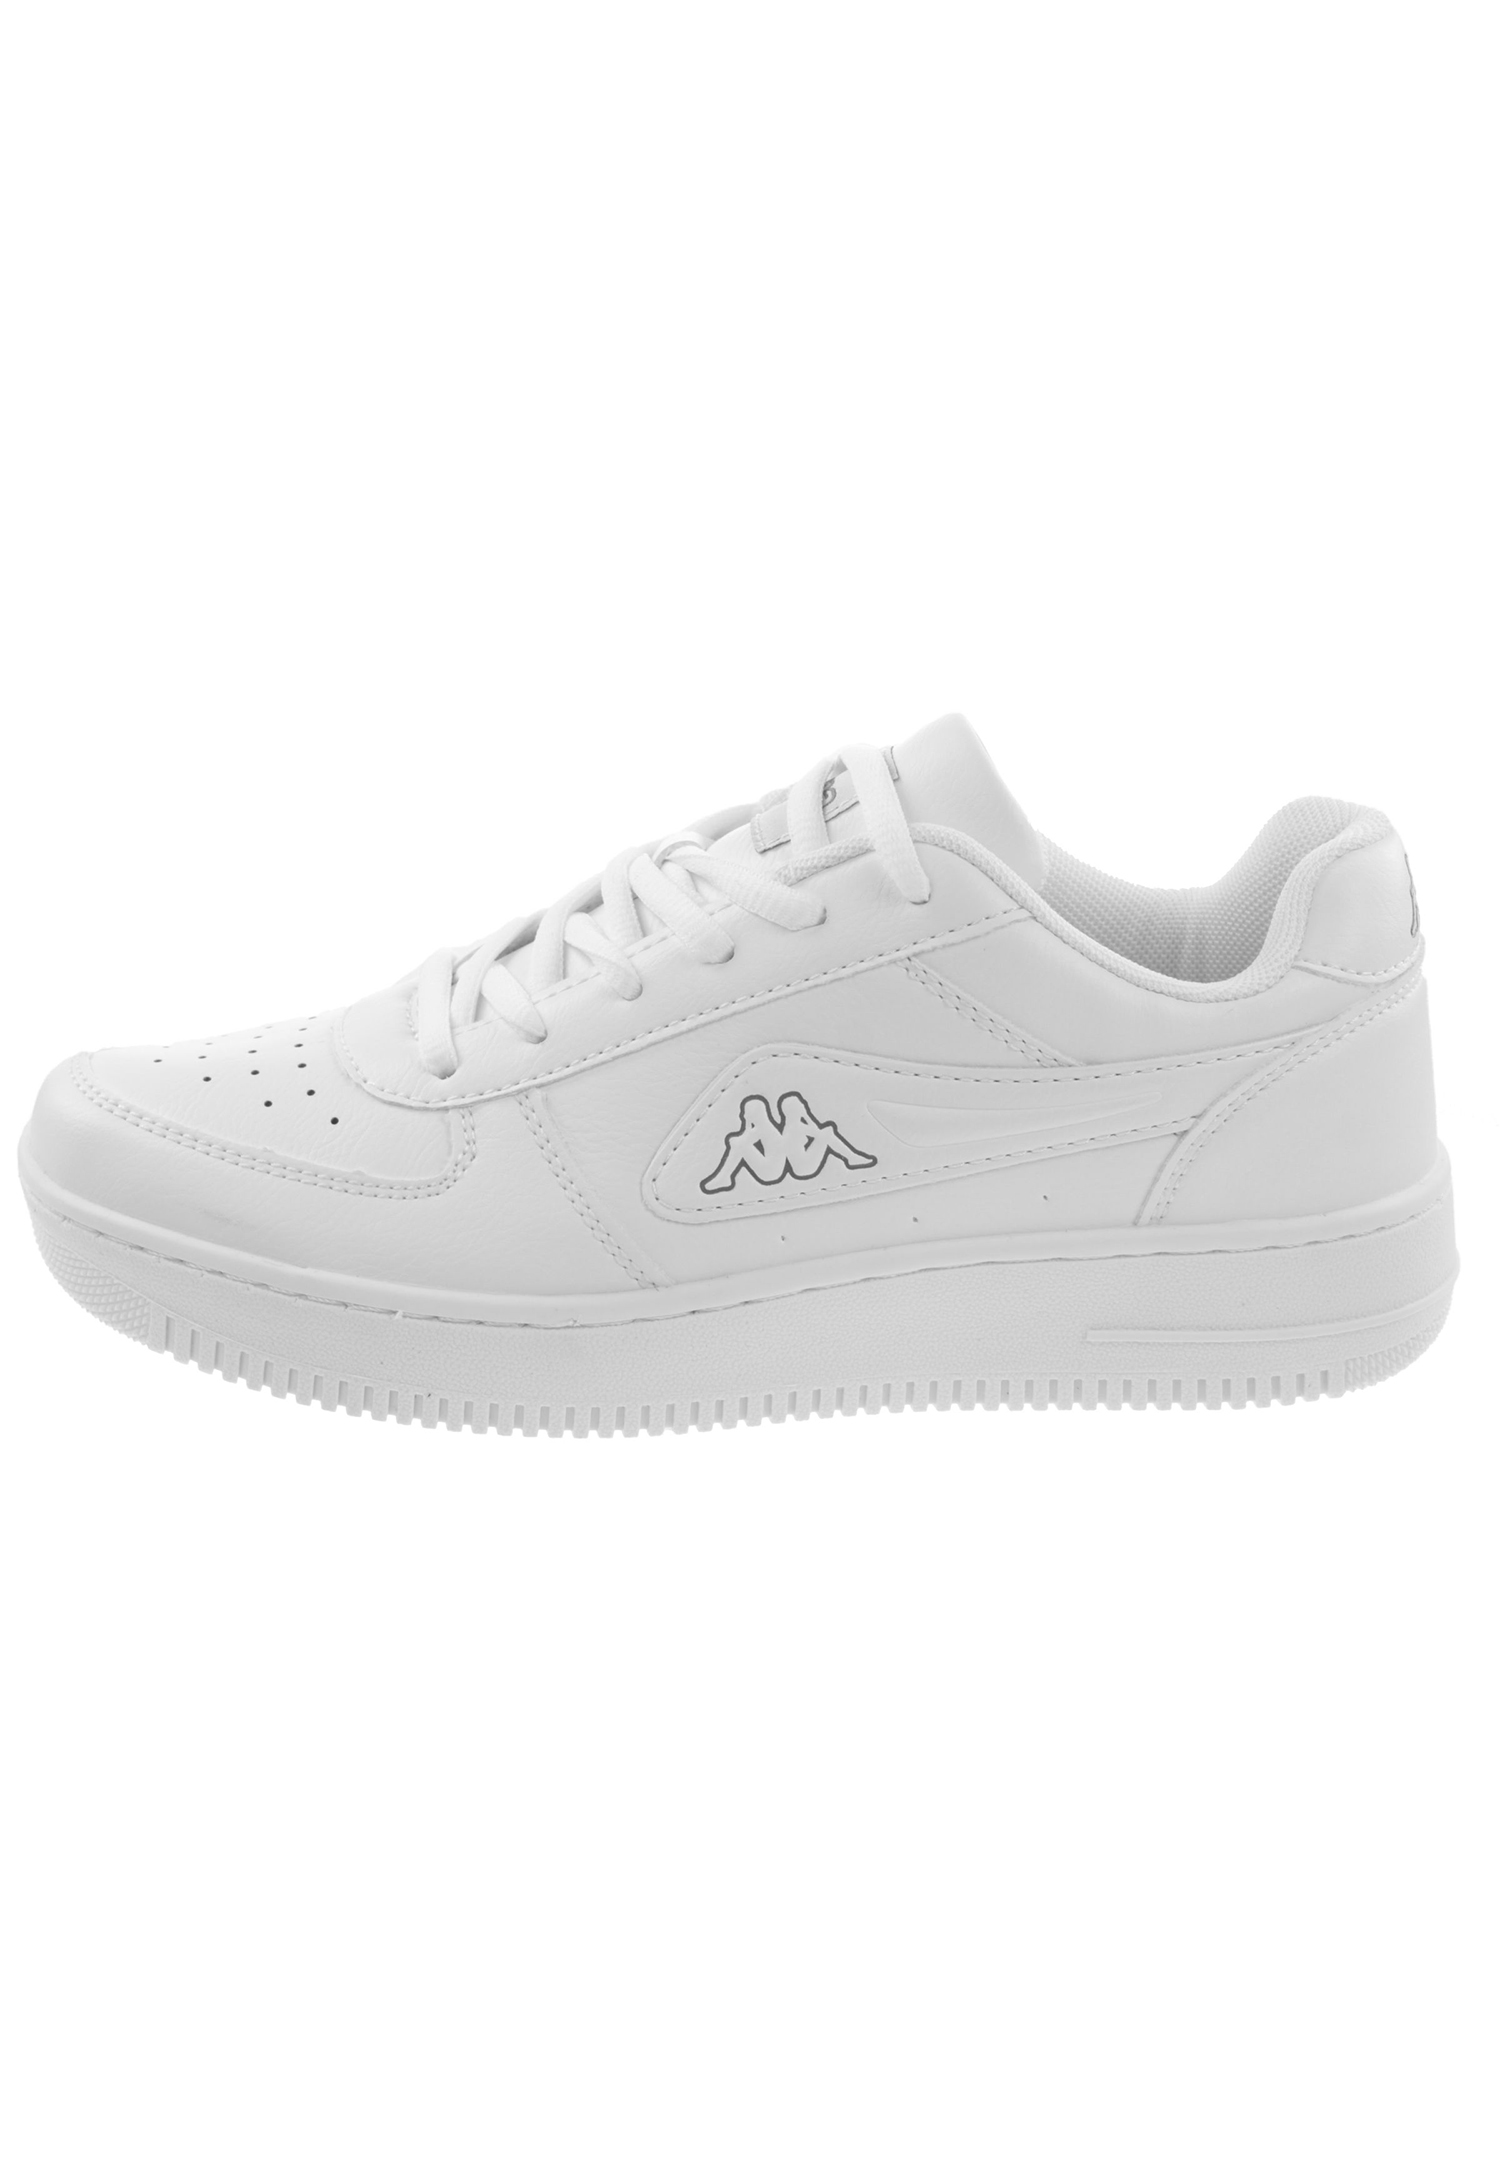 Kappa Unisex Sneaker STYLECODE: 242533 Weiß